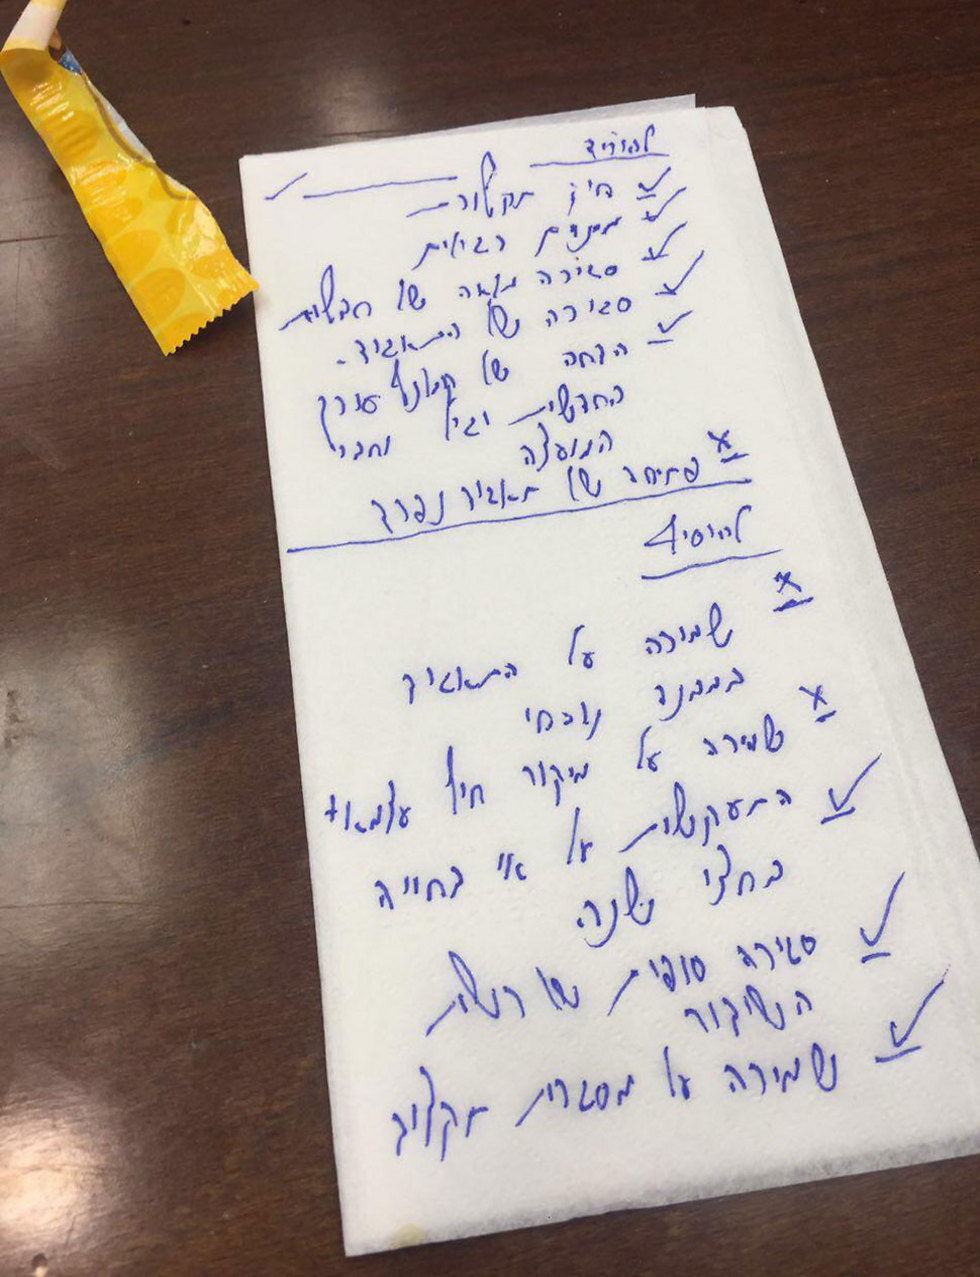 לידי ynet הגיעה המפית עליה רשם במו"מ במהלך הלילה מנכ"ל האוצר שי באב"ד את הנקודות העיקריות שרצה להשיג ()